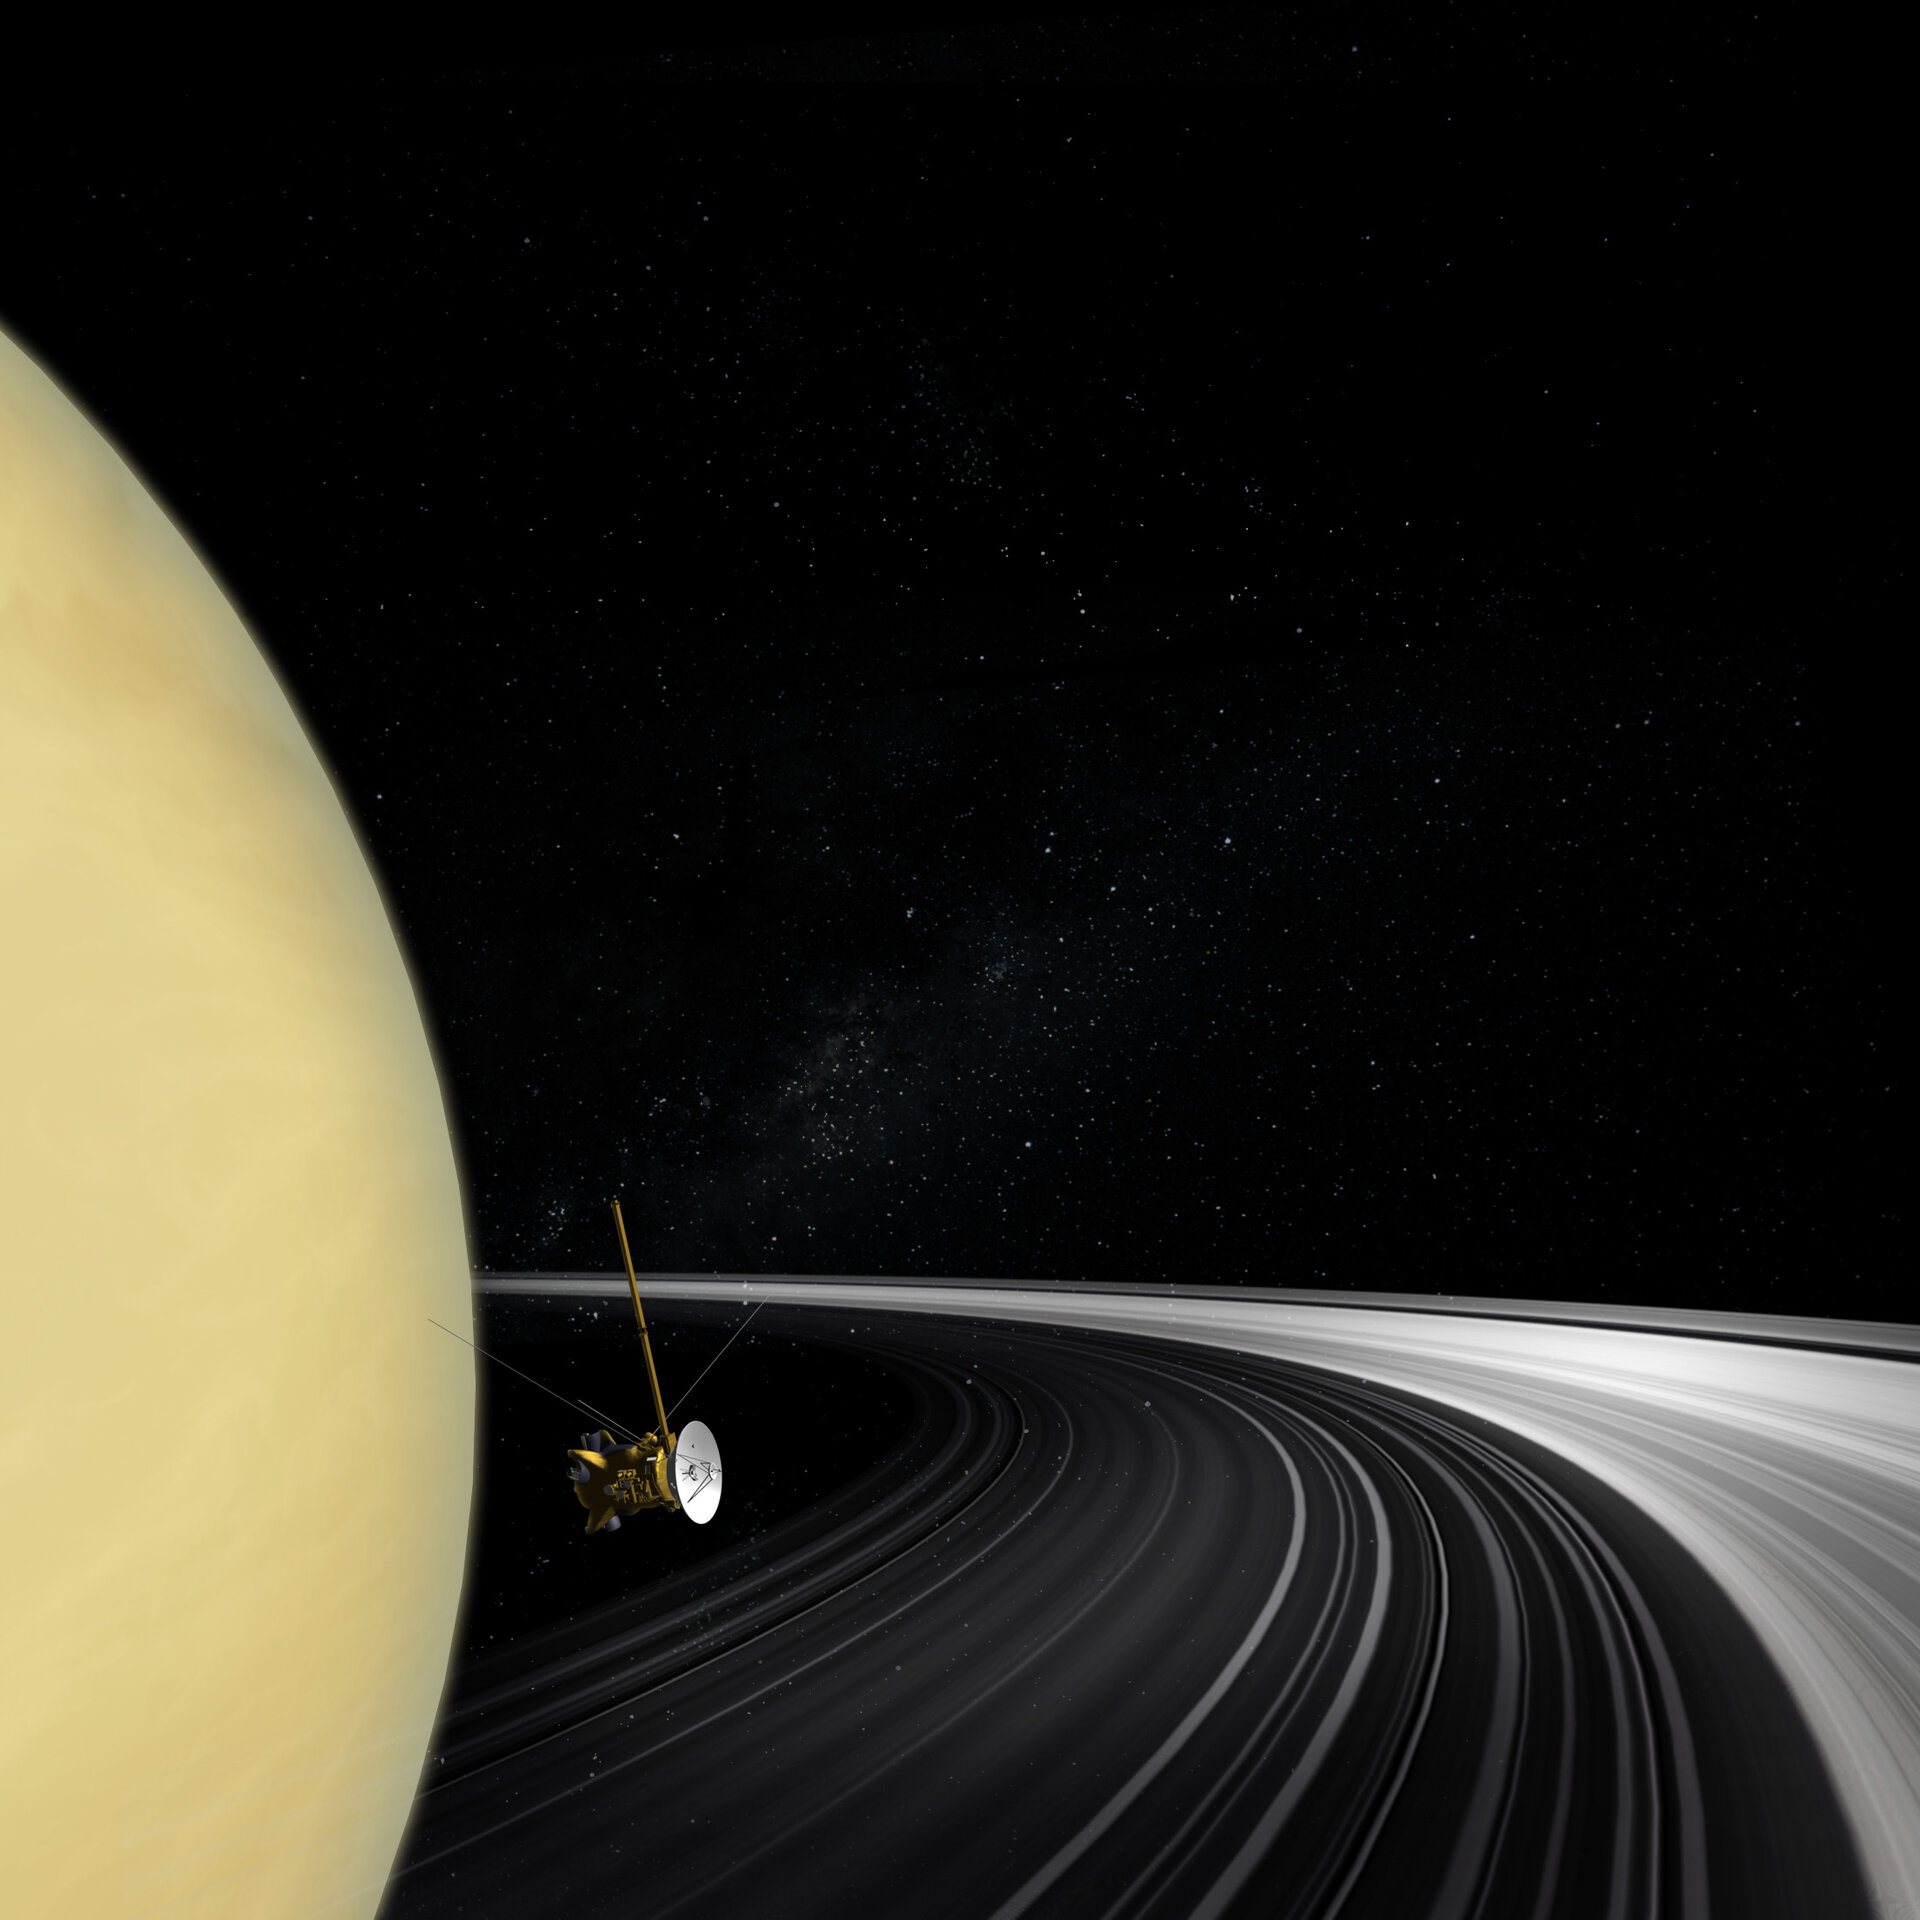 Cassini orbiter crossing Saturn's ring plane